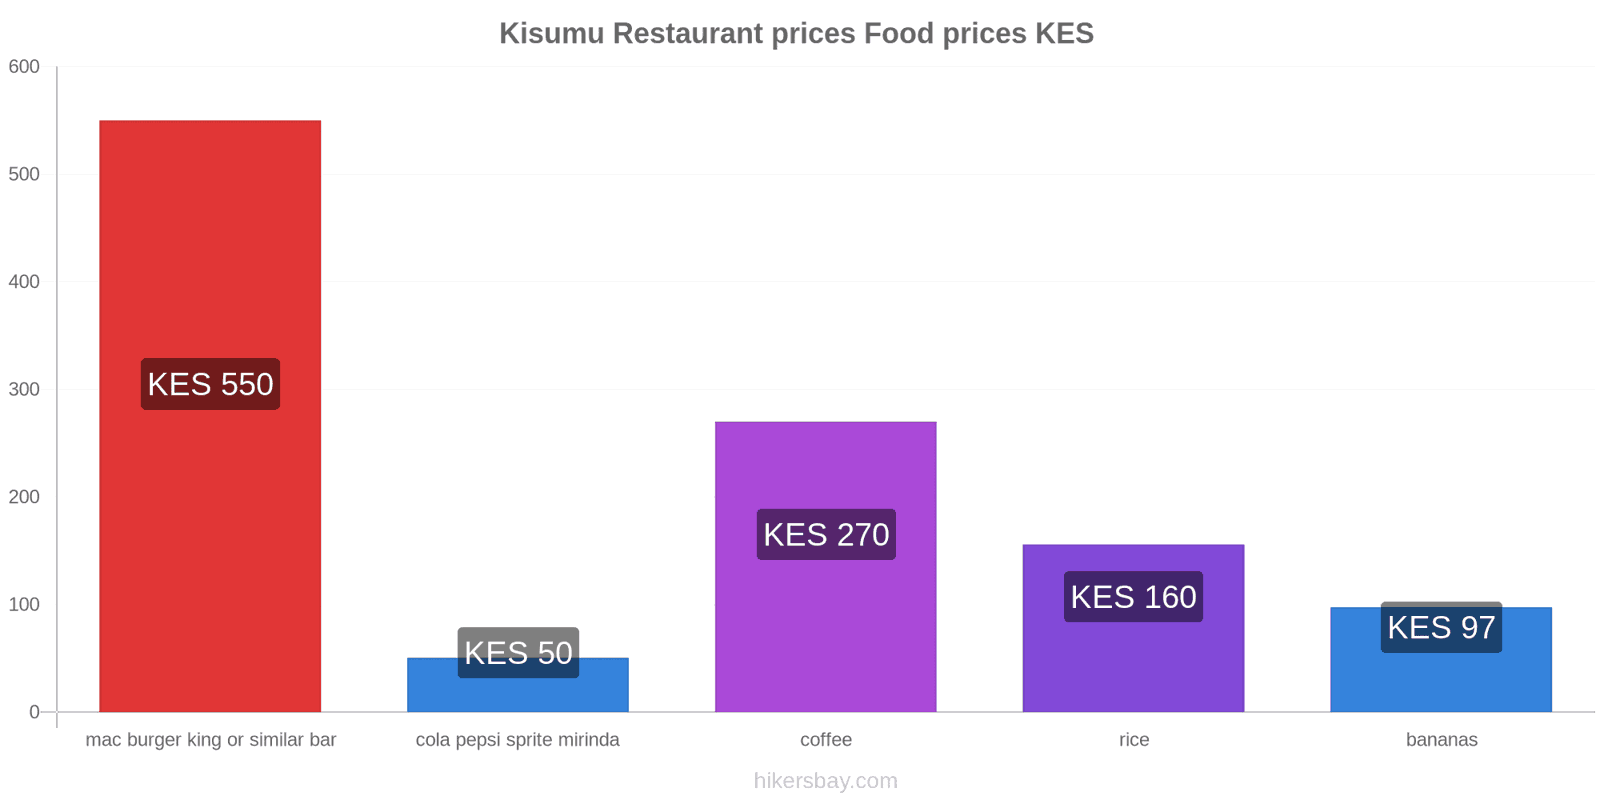 Kisumu price changes hikersbay.com